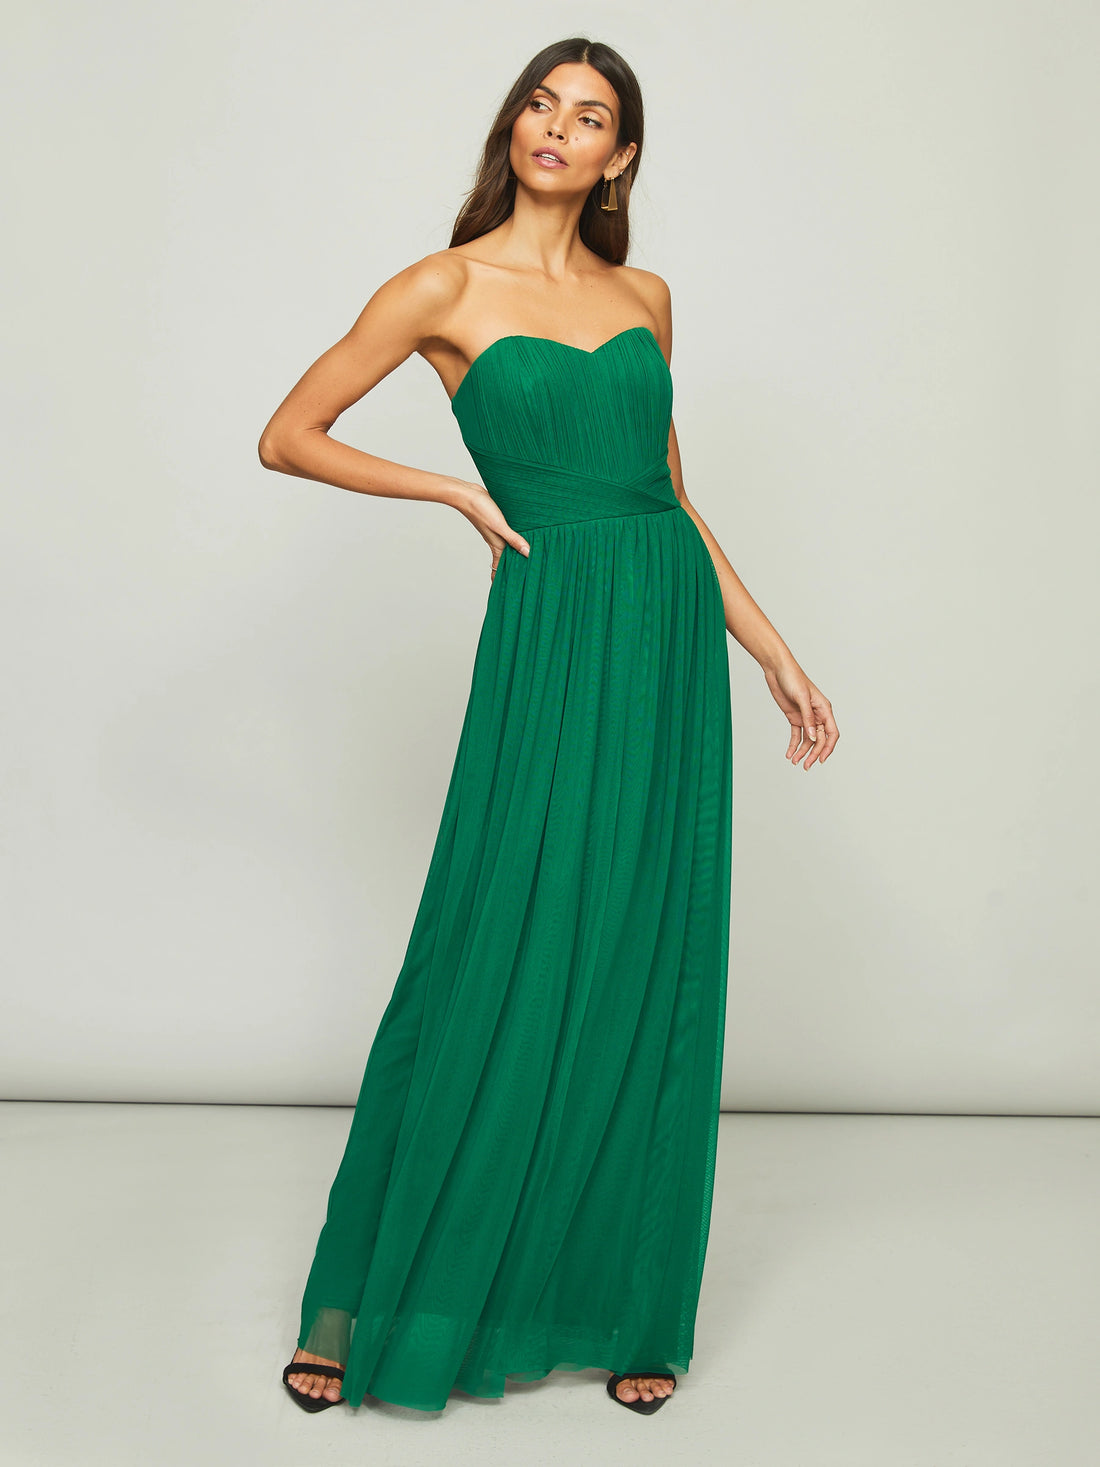 Green Strapless Sweatheart Neck Long Dress